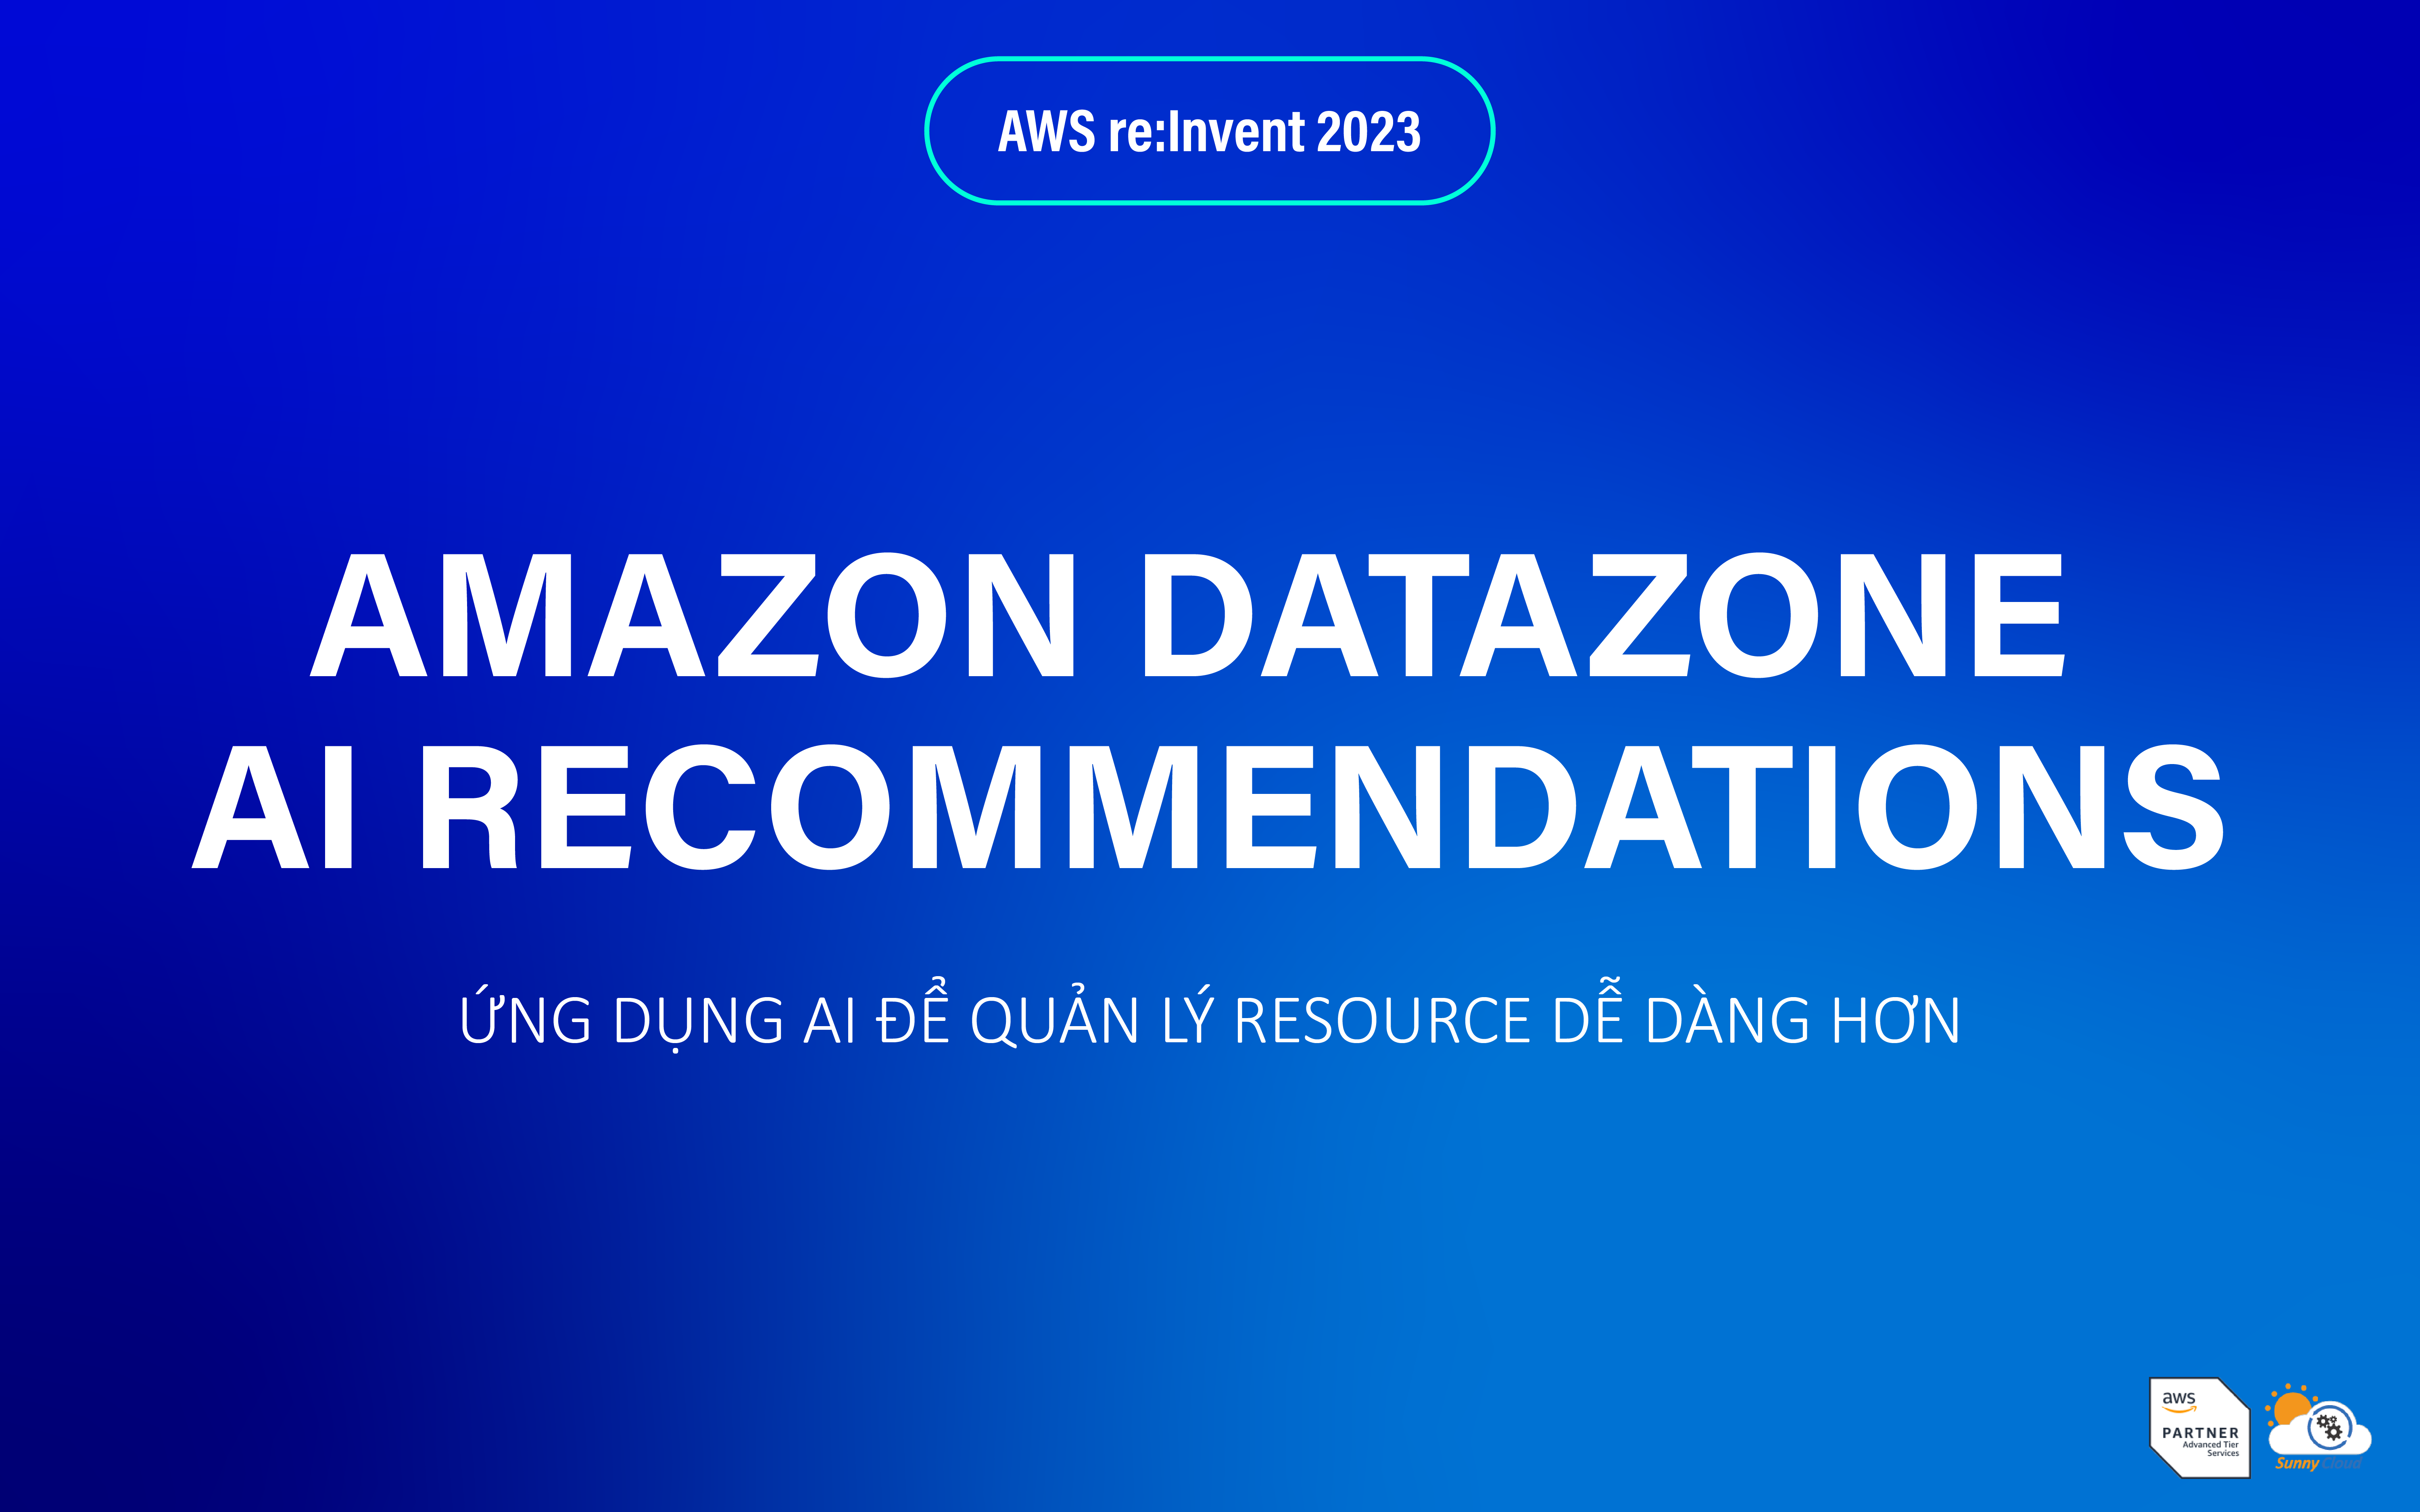 Amazon DataZone AI recommendations – Ứng dụng AI để quản lý resource dễ dàng hơn